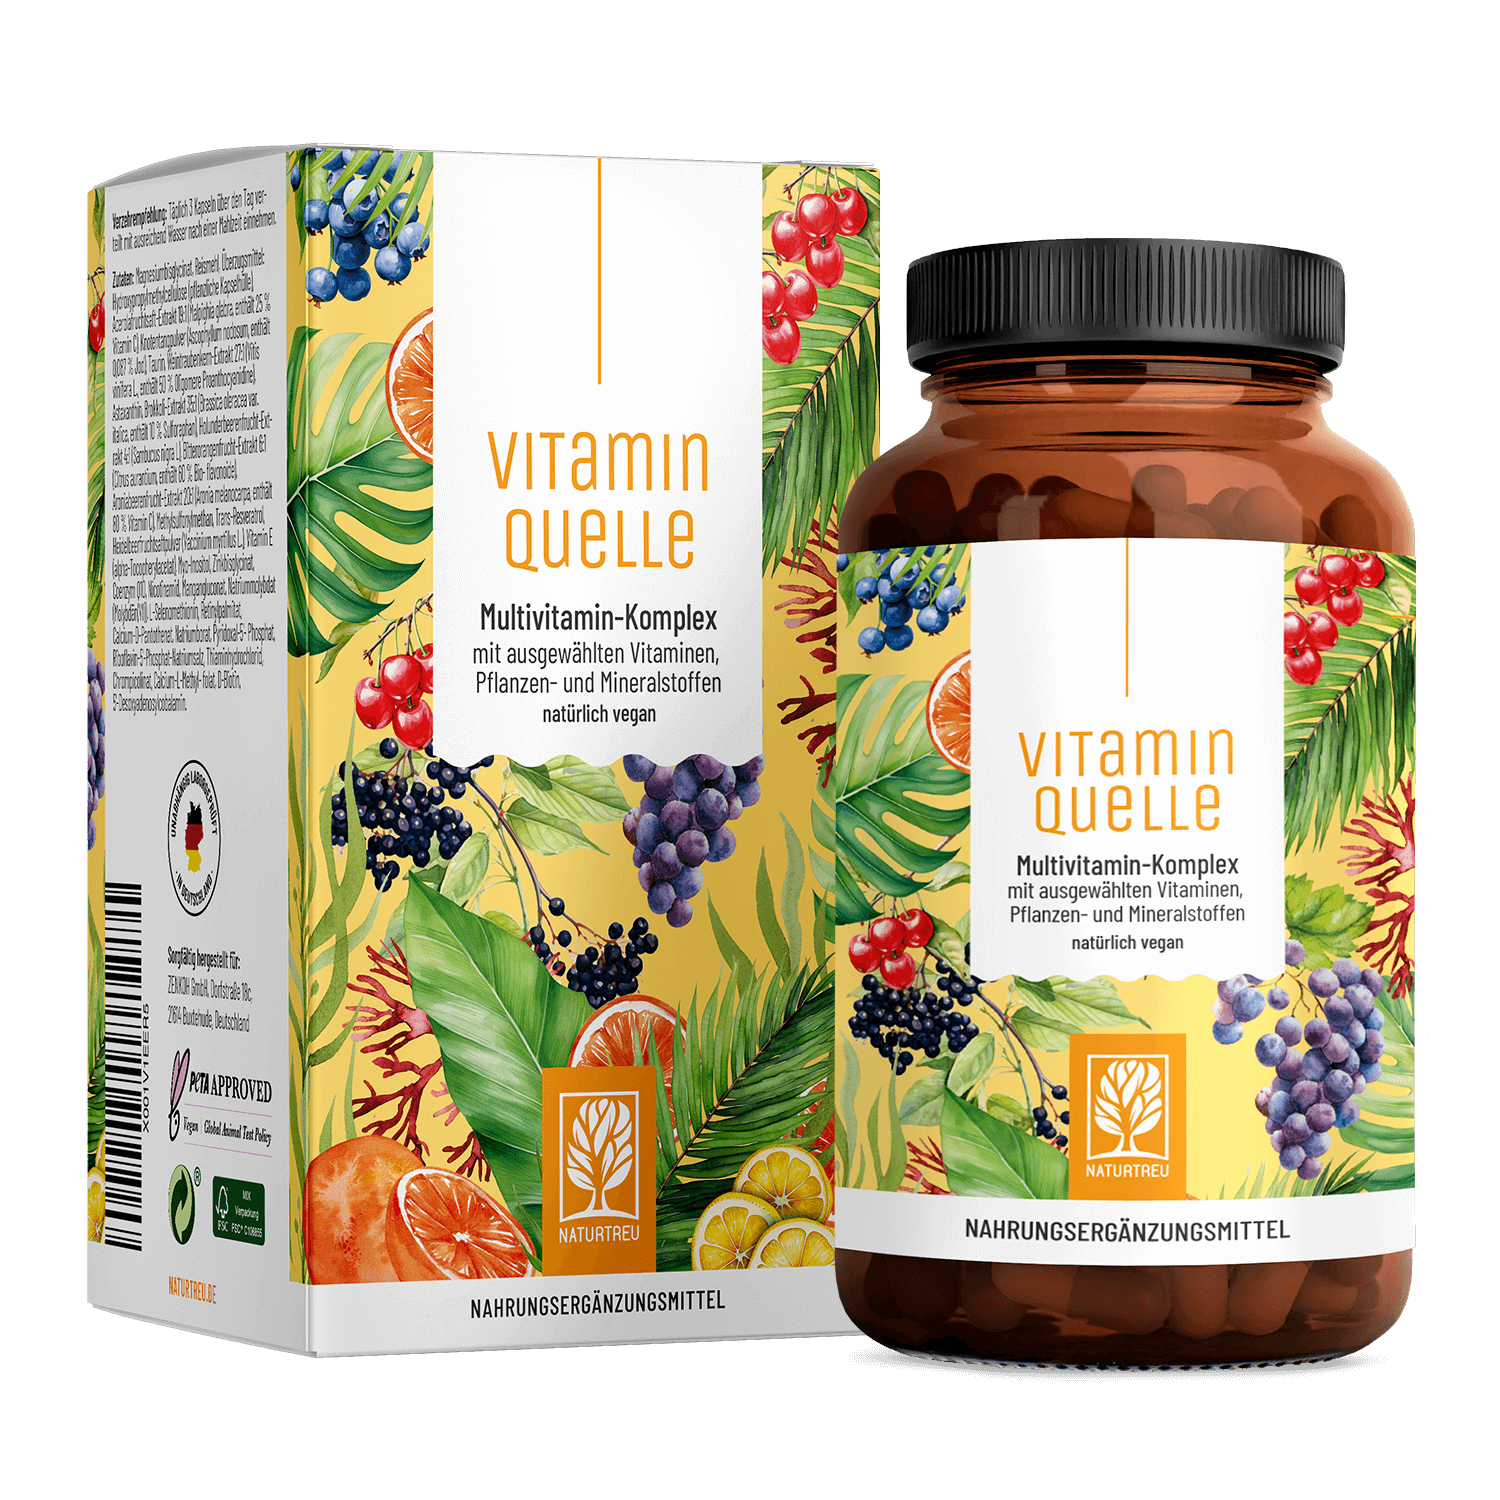 Vitaminquelle - Multivitamin-Komplex mit ausgewählten Vitaminen, Pflanzen- und Mineralstoffen von NATURTREU